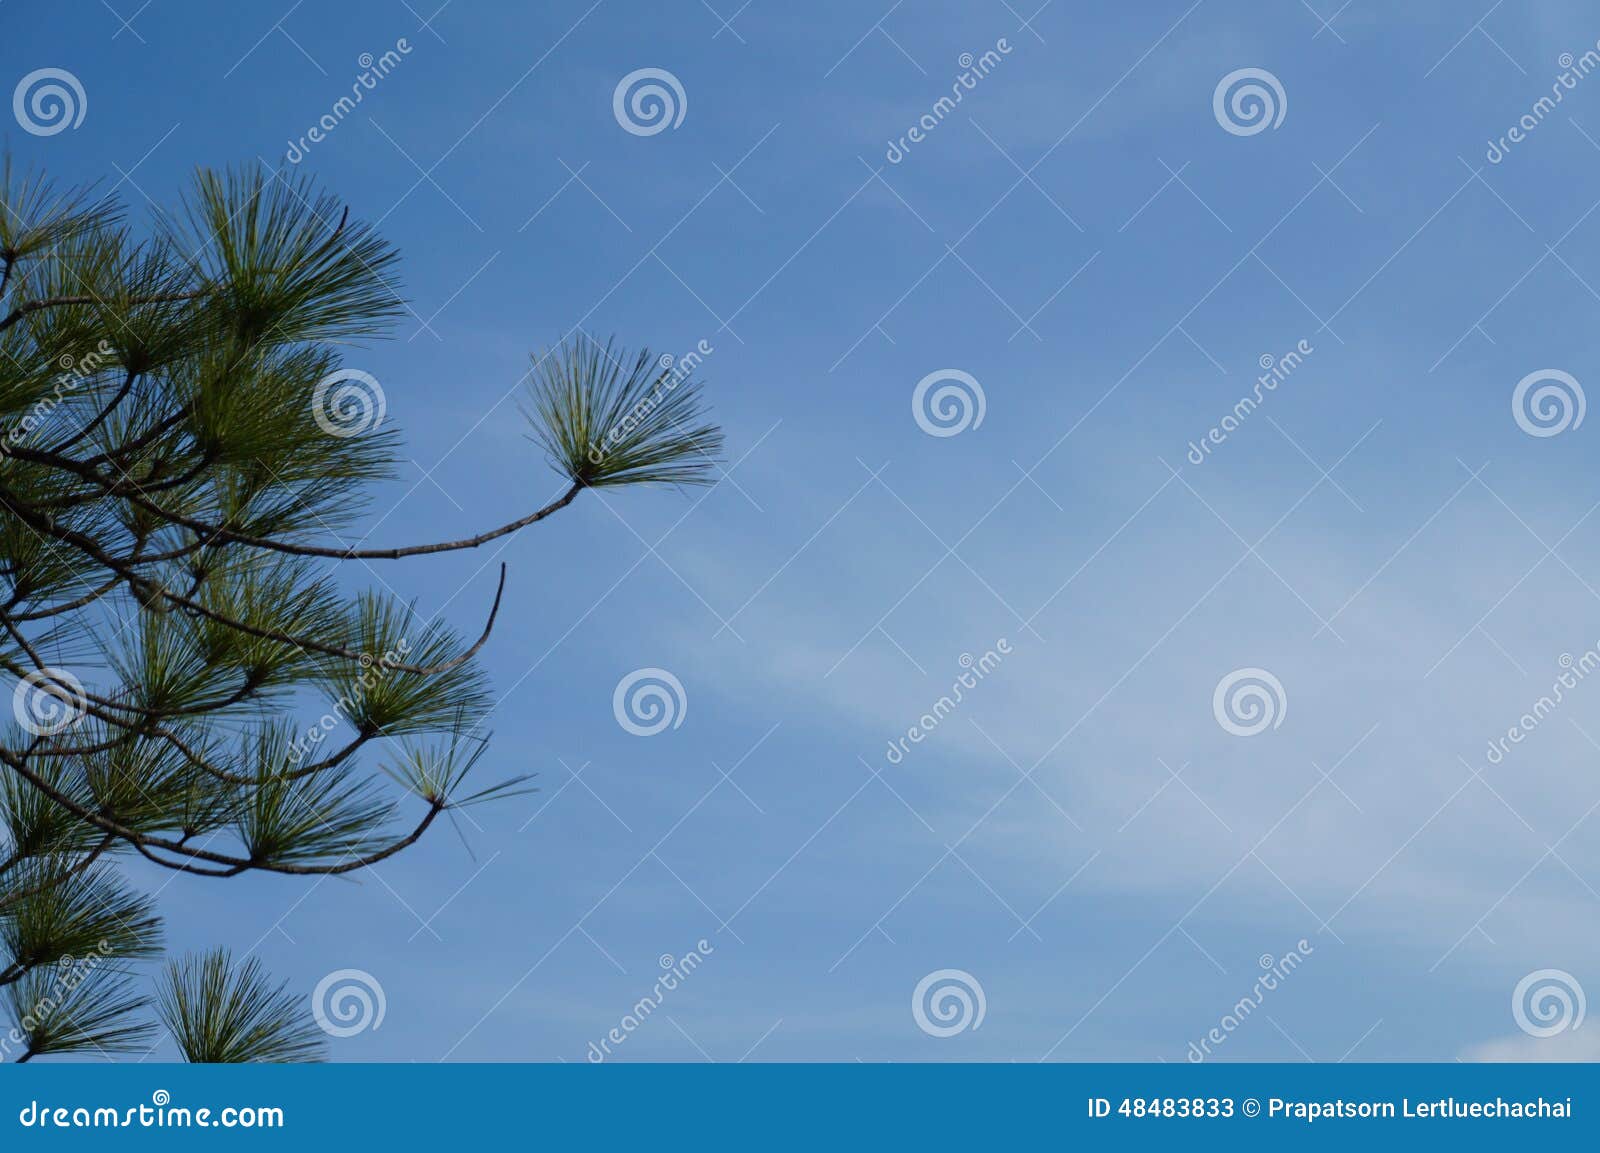  Sumatran Pine  5 stock image Image of group sour 